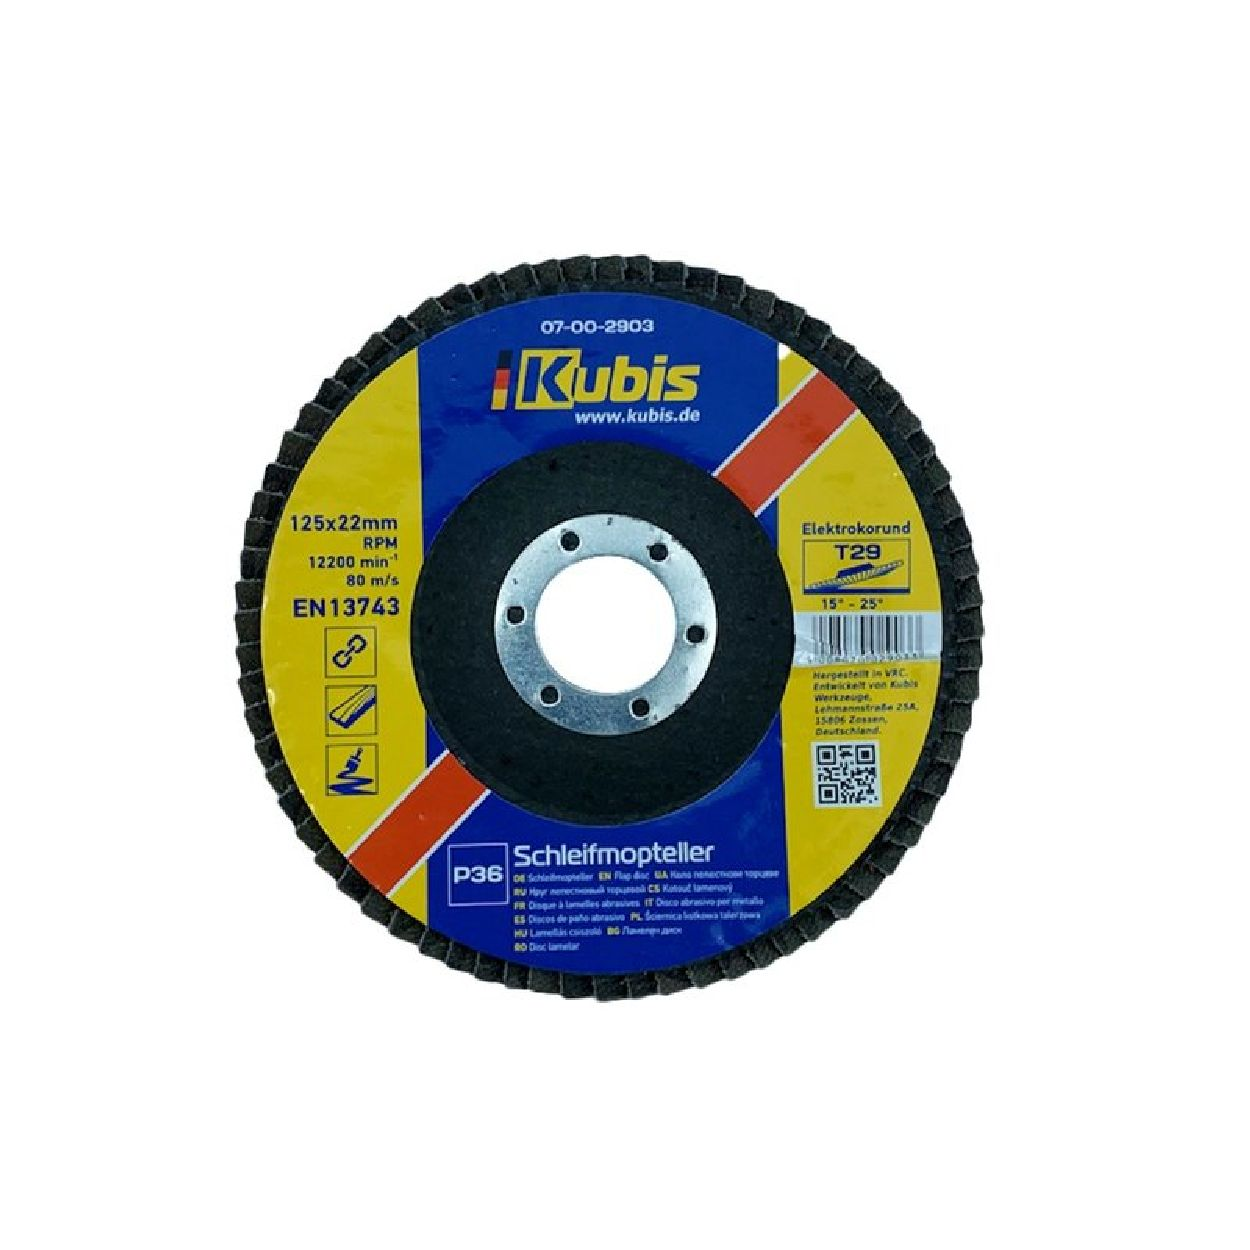 INBUSCO / KUBIS Schleifmopteller KB07-00-2903-1-2 Multifunktionswerkzeug, Transparent